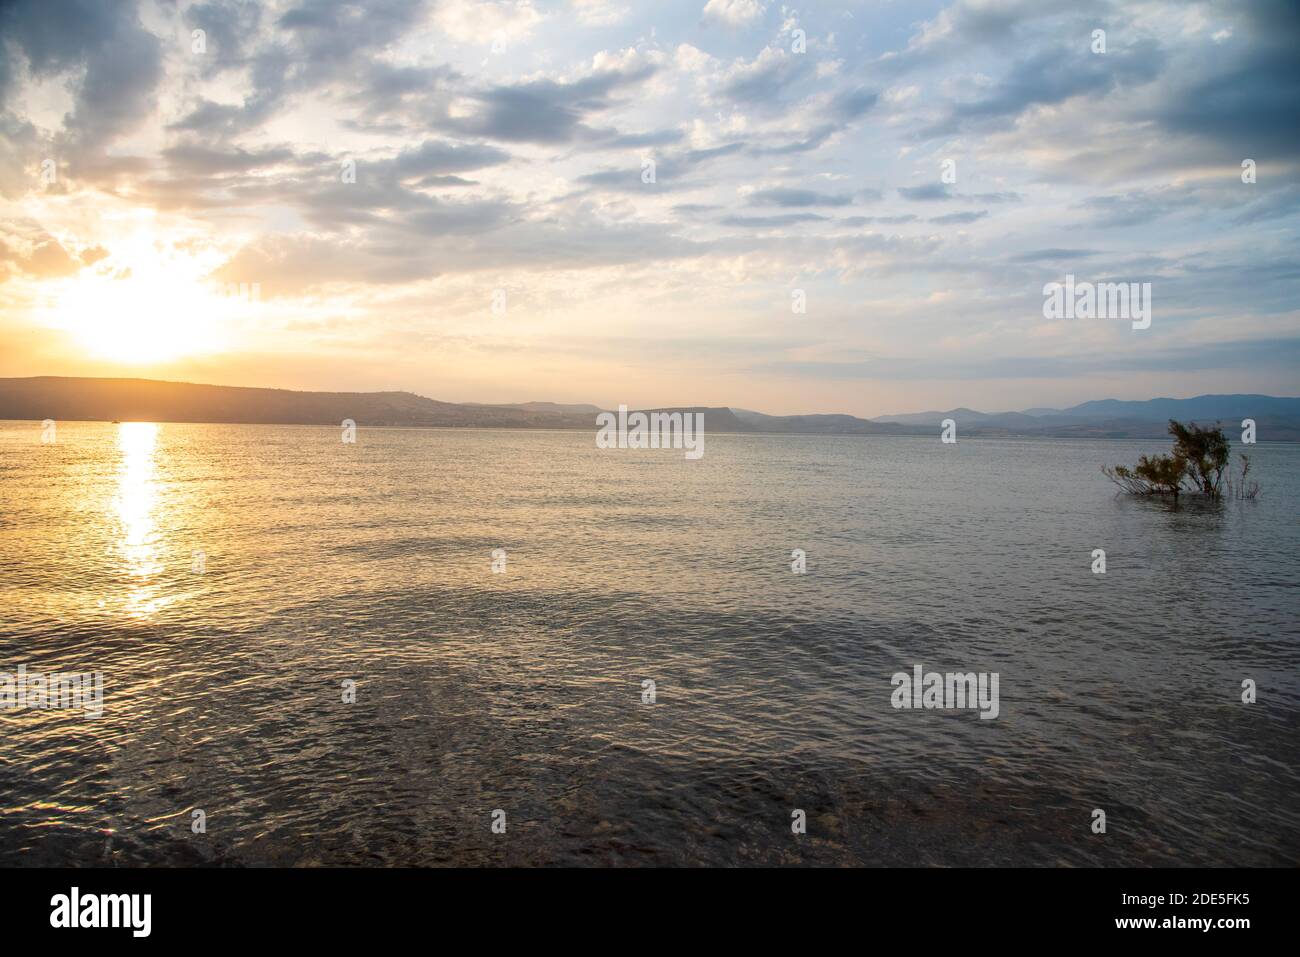 Coucher de soleil sur la mer de Galilée et les hauteurs du Golan. Photo de haute qualité. Banque D'Images